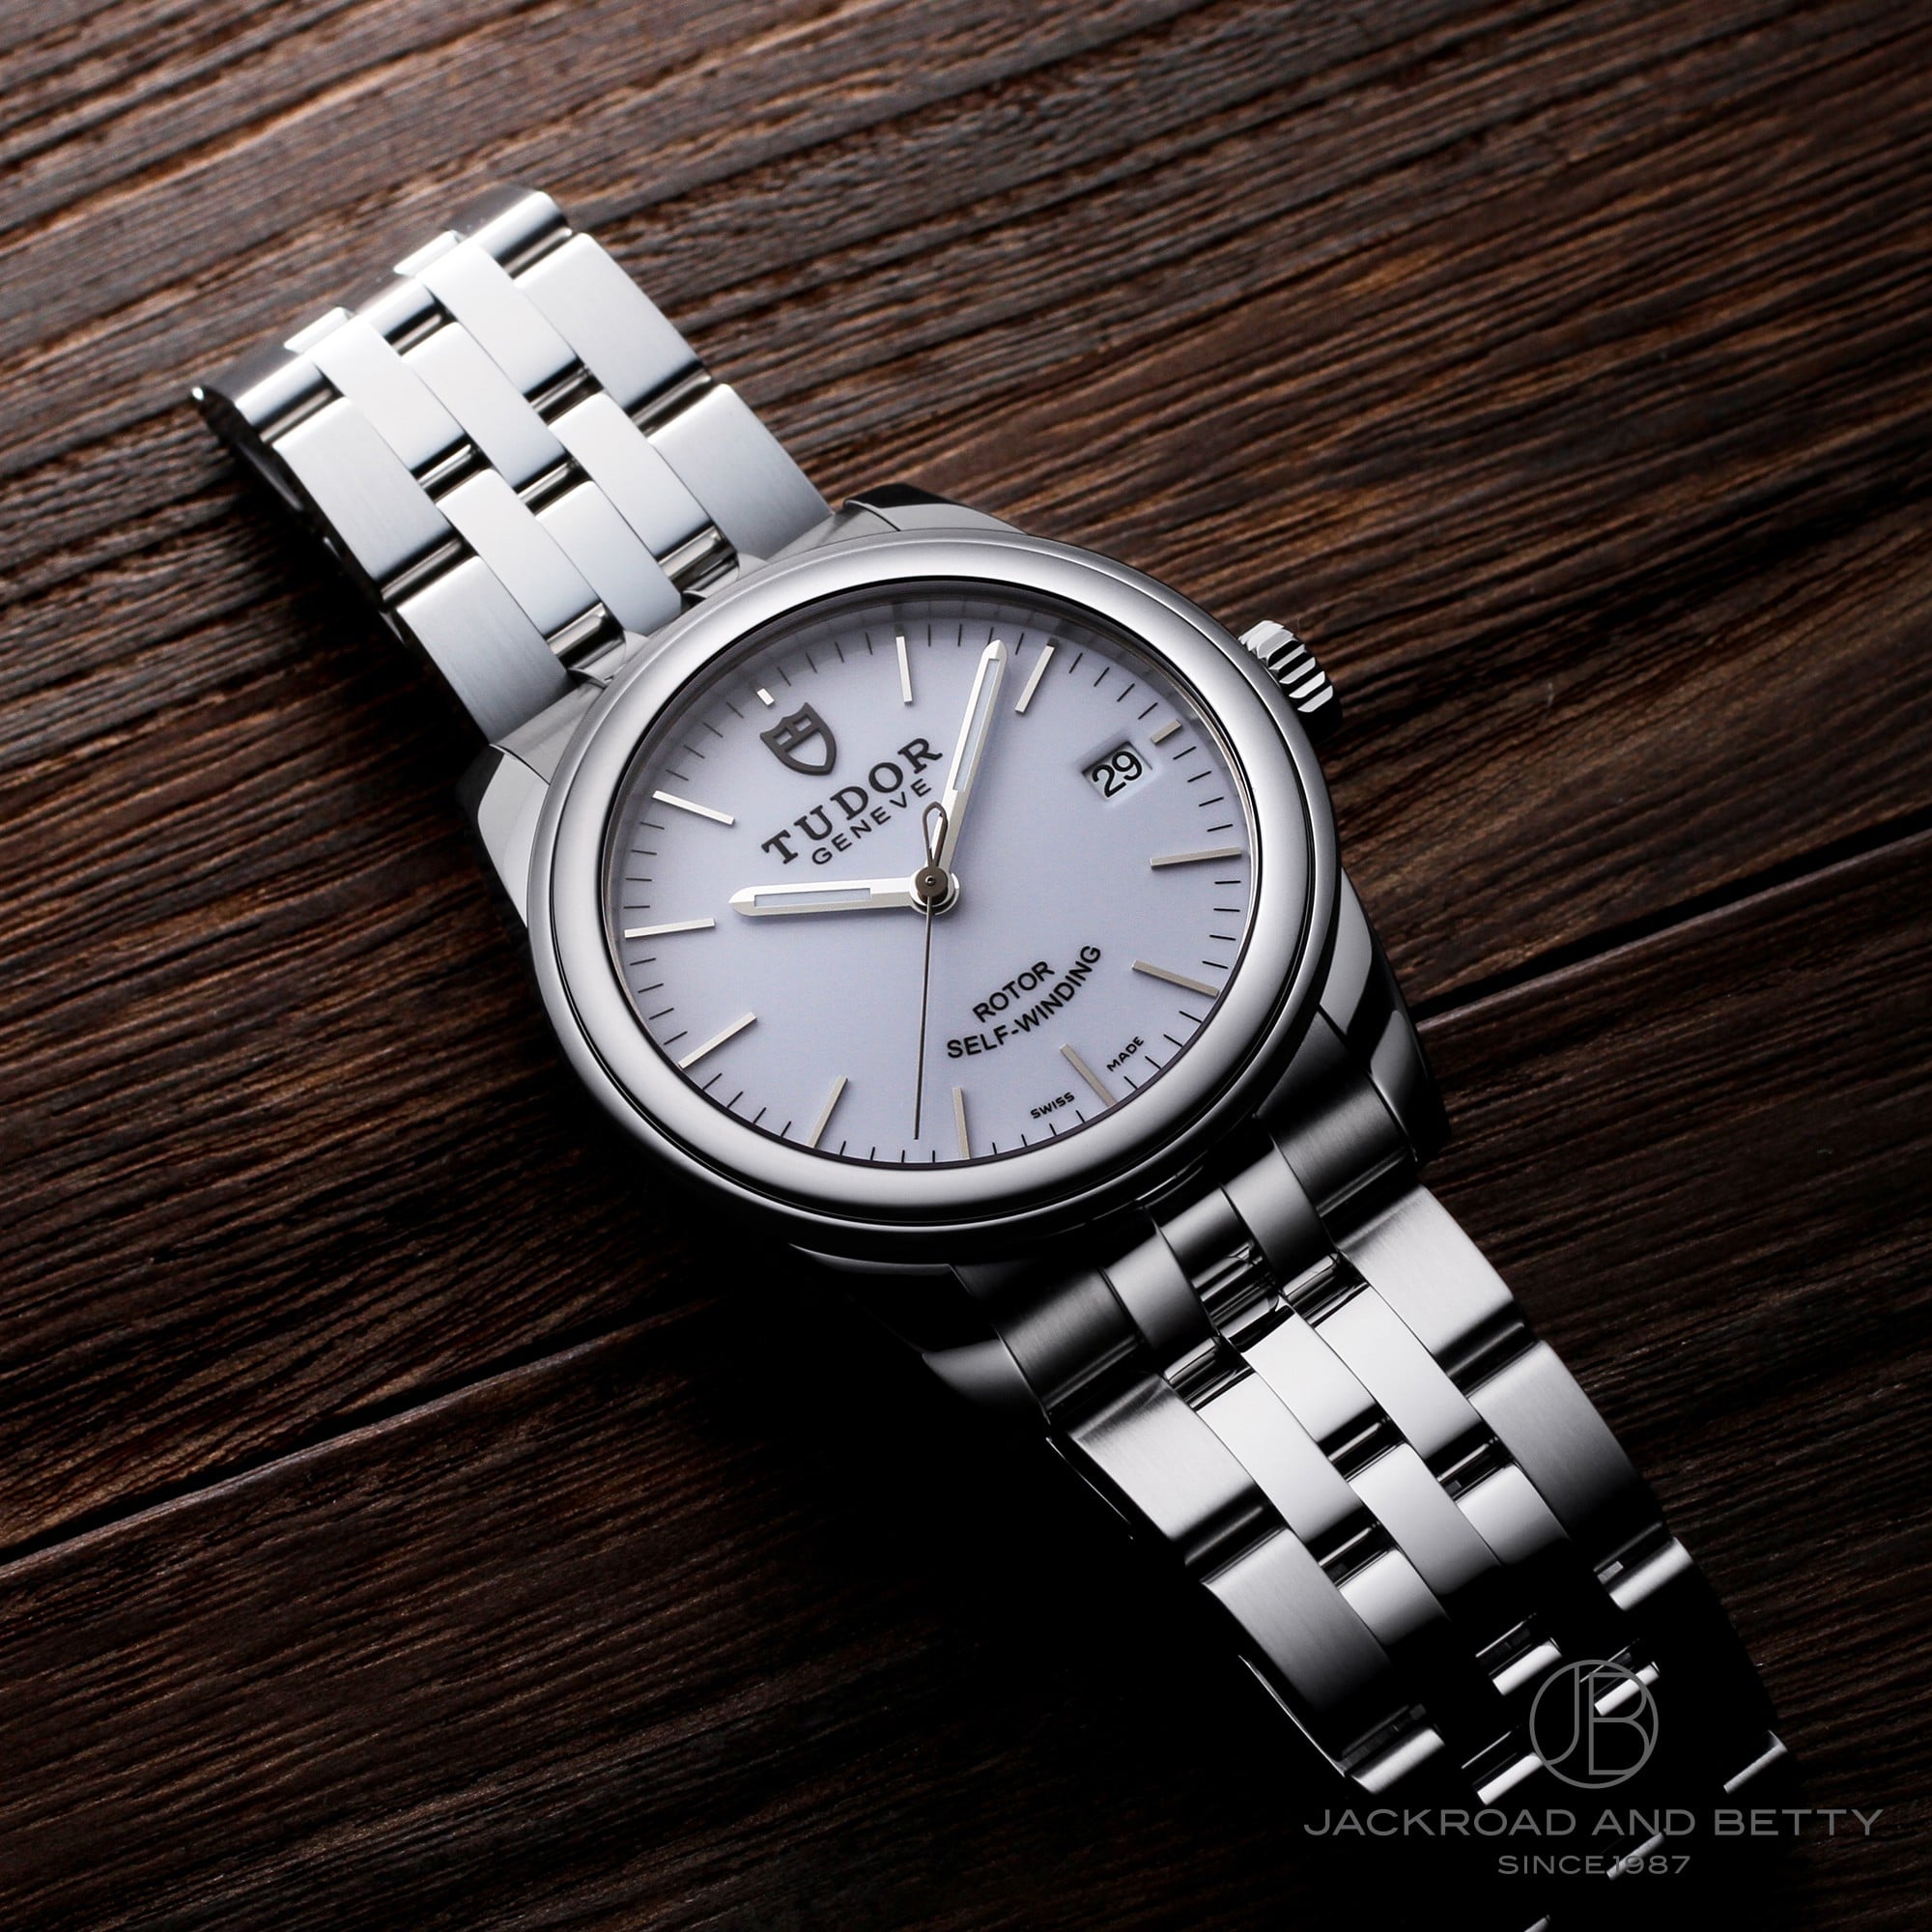 チューダー/チュードル TUDOR グラマーデイト 55000 ステンレススチール メンズ 腕時計